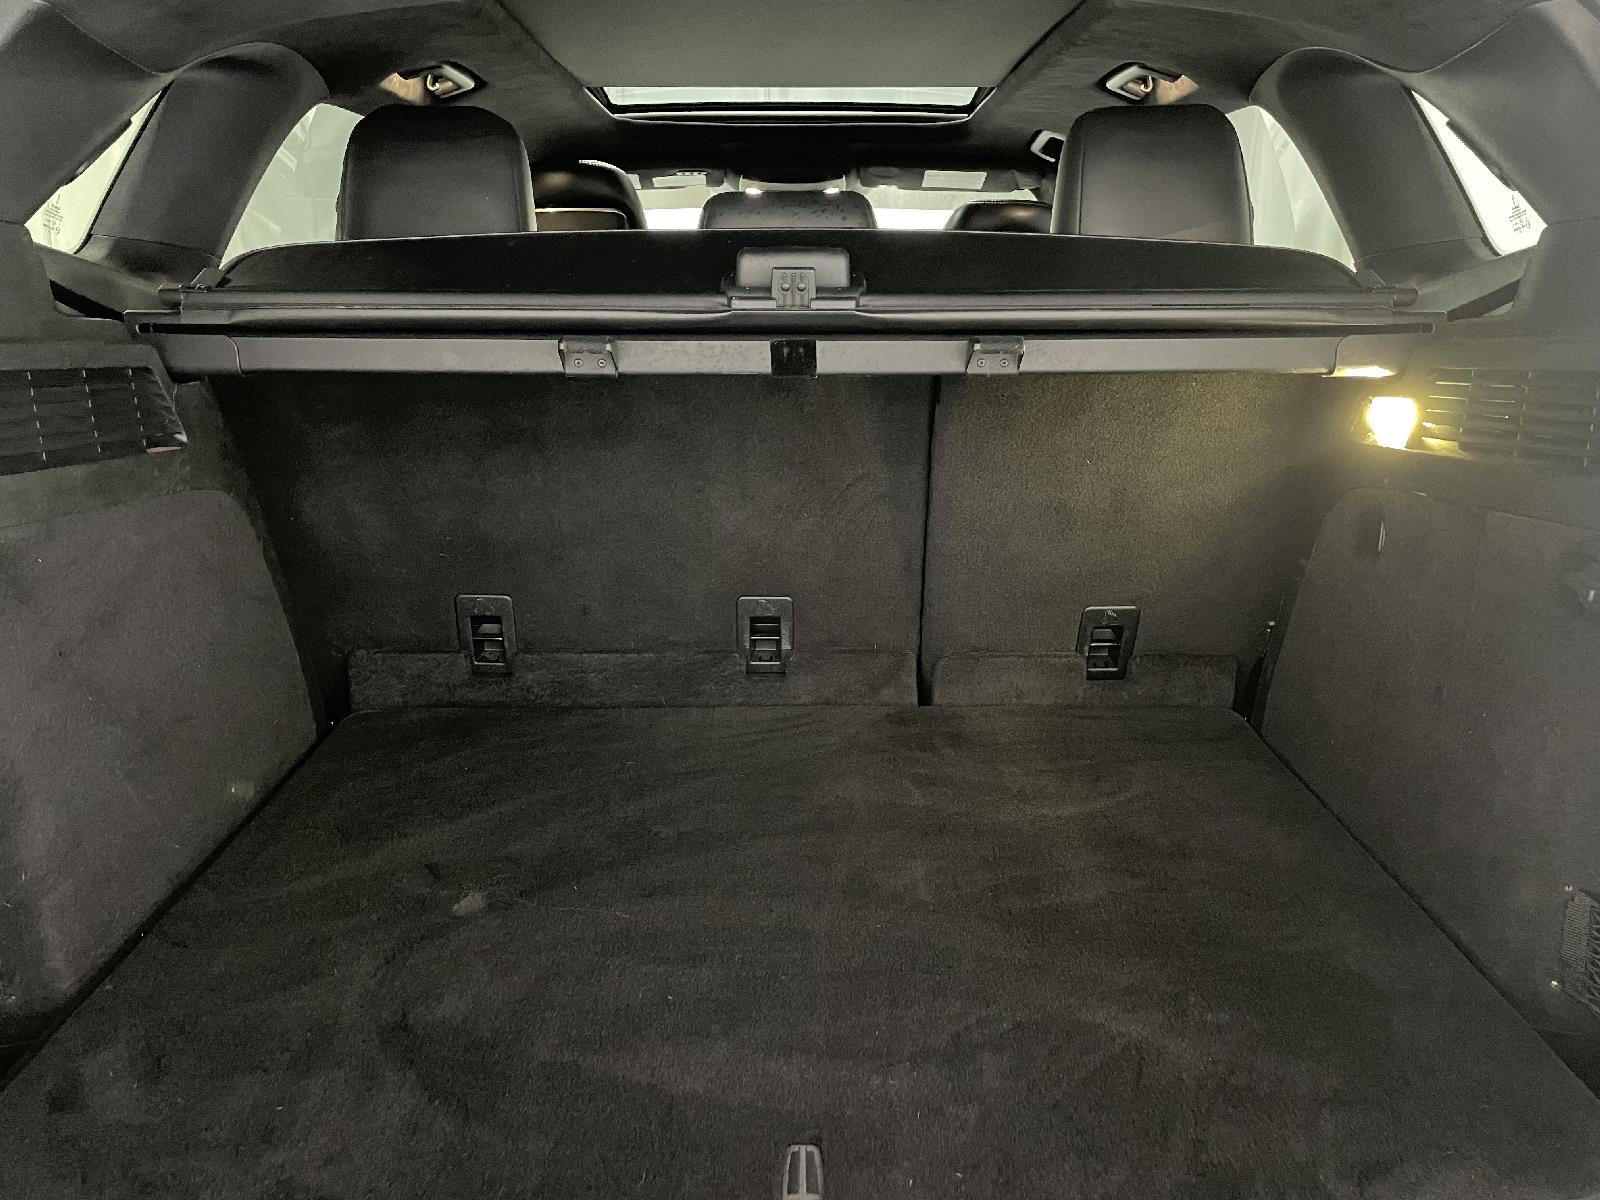 Used 2016 Lincoln MKC Black Label SUV for sale in St Joseph MO